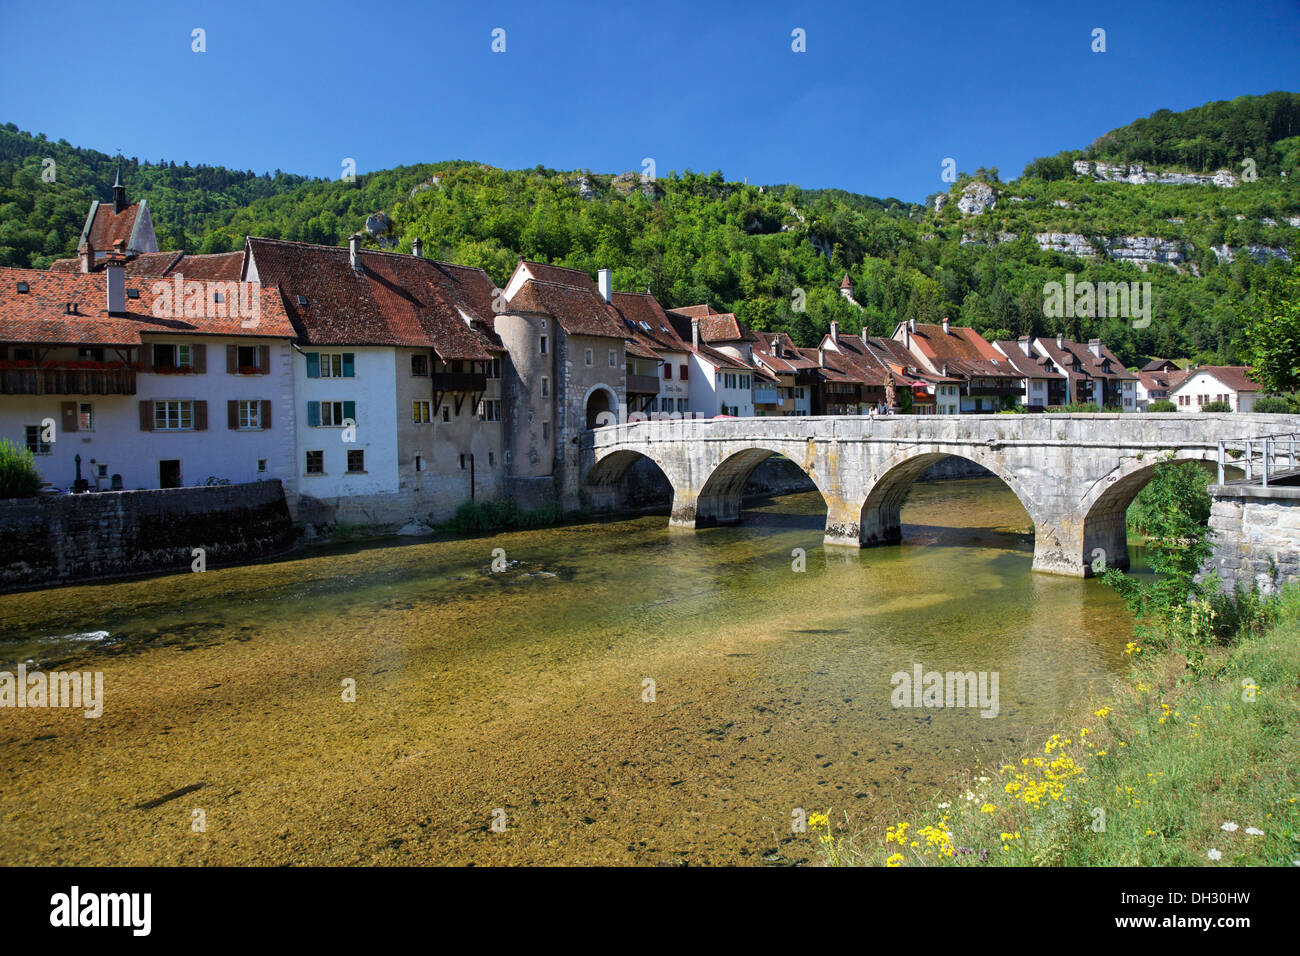 Suisse, Jura, St.Ursanne, pont, village, Schweiz, Jura Berge, St-Ursanne, Brücke, Dorf Banque D'Images